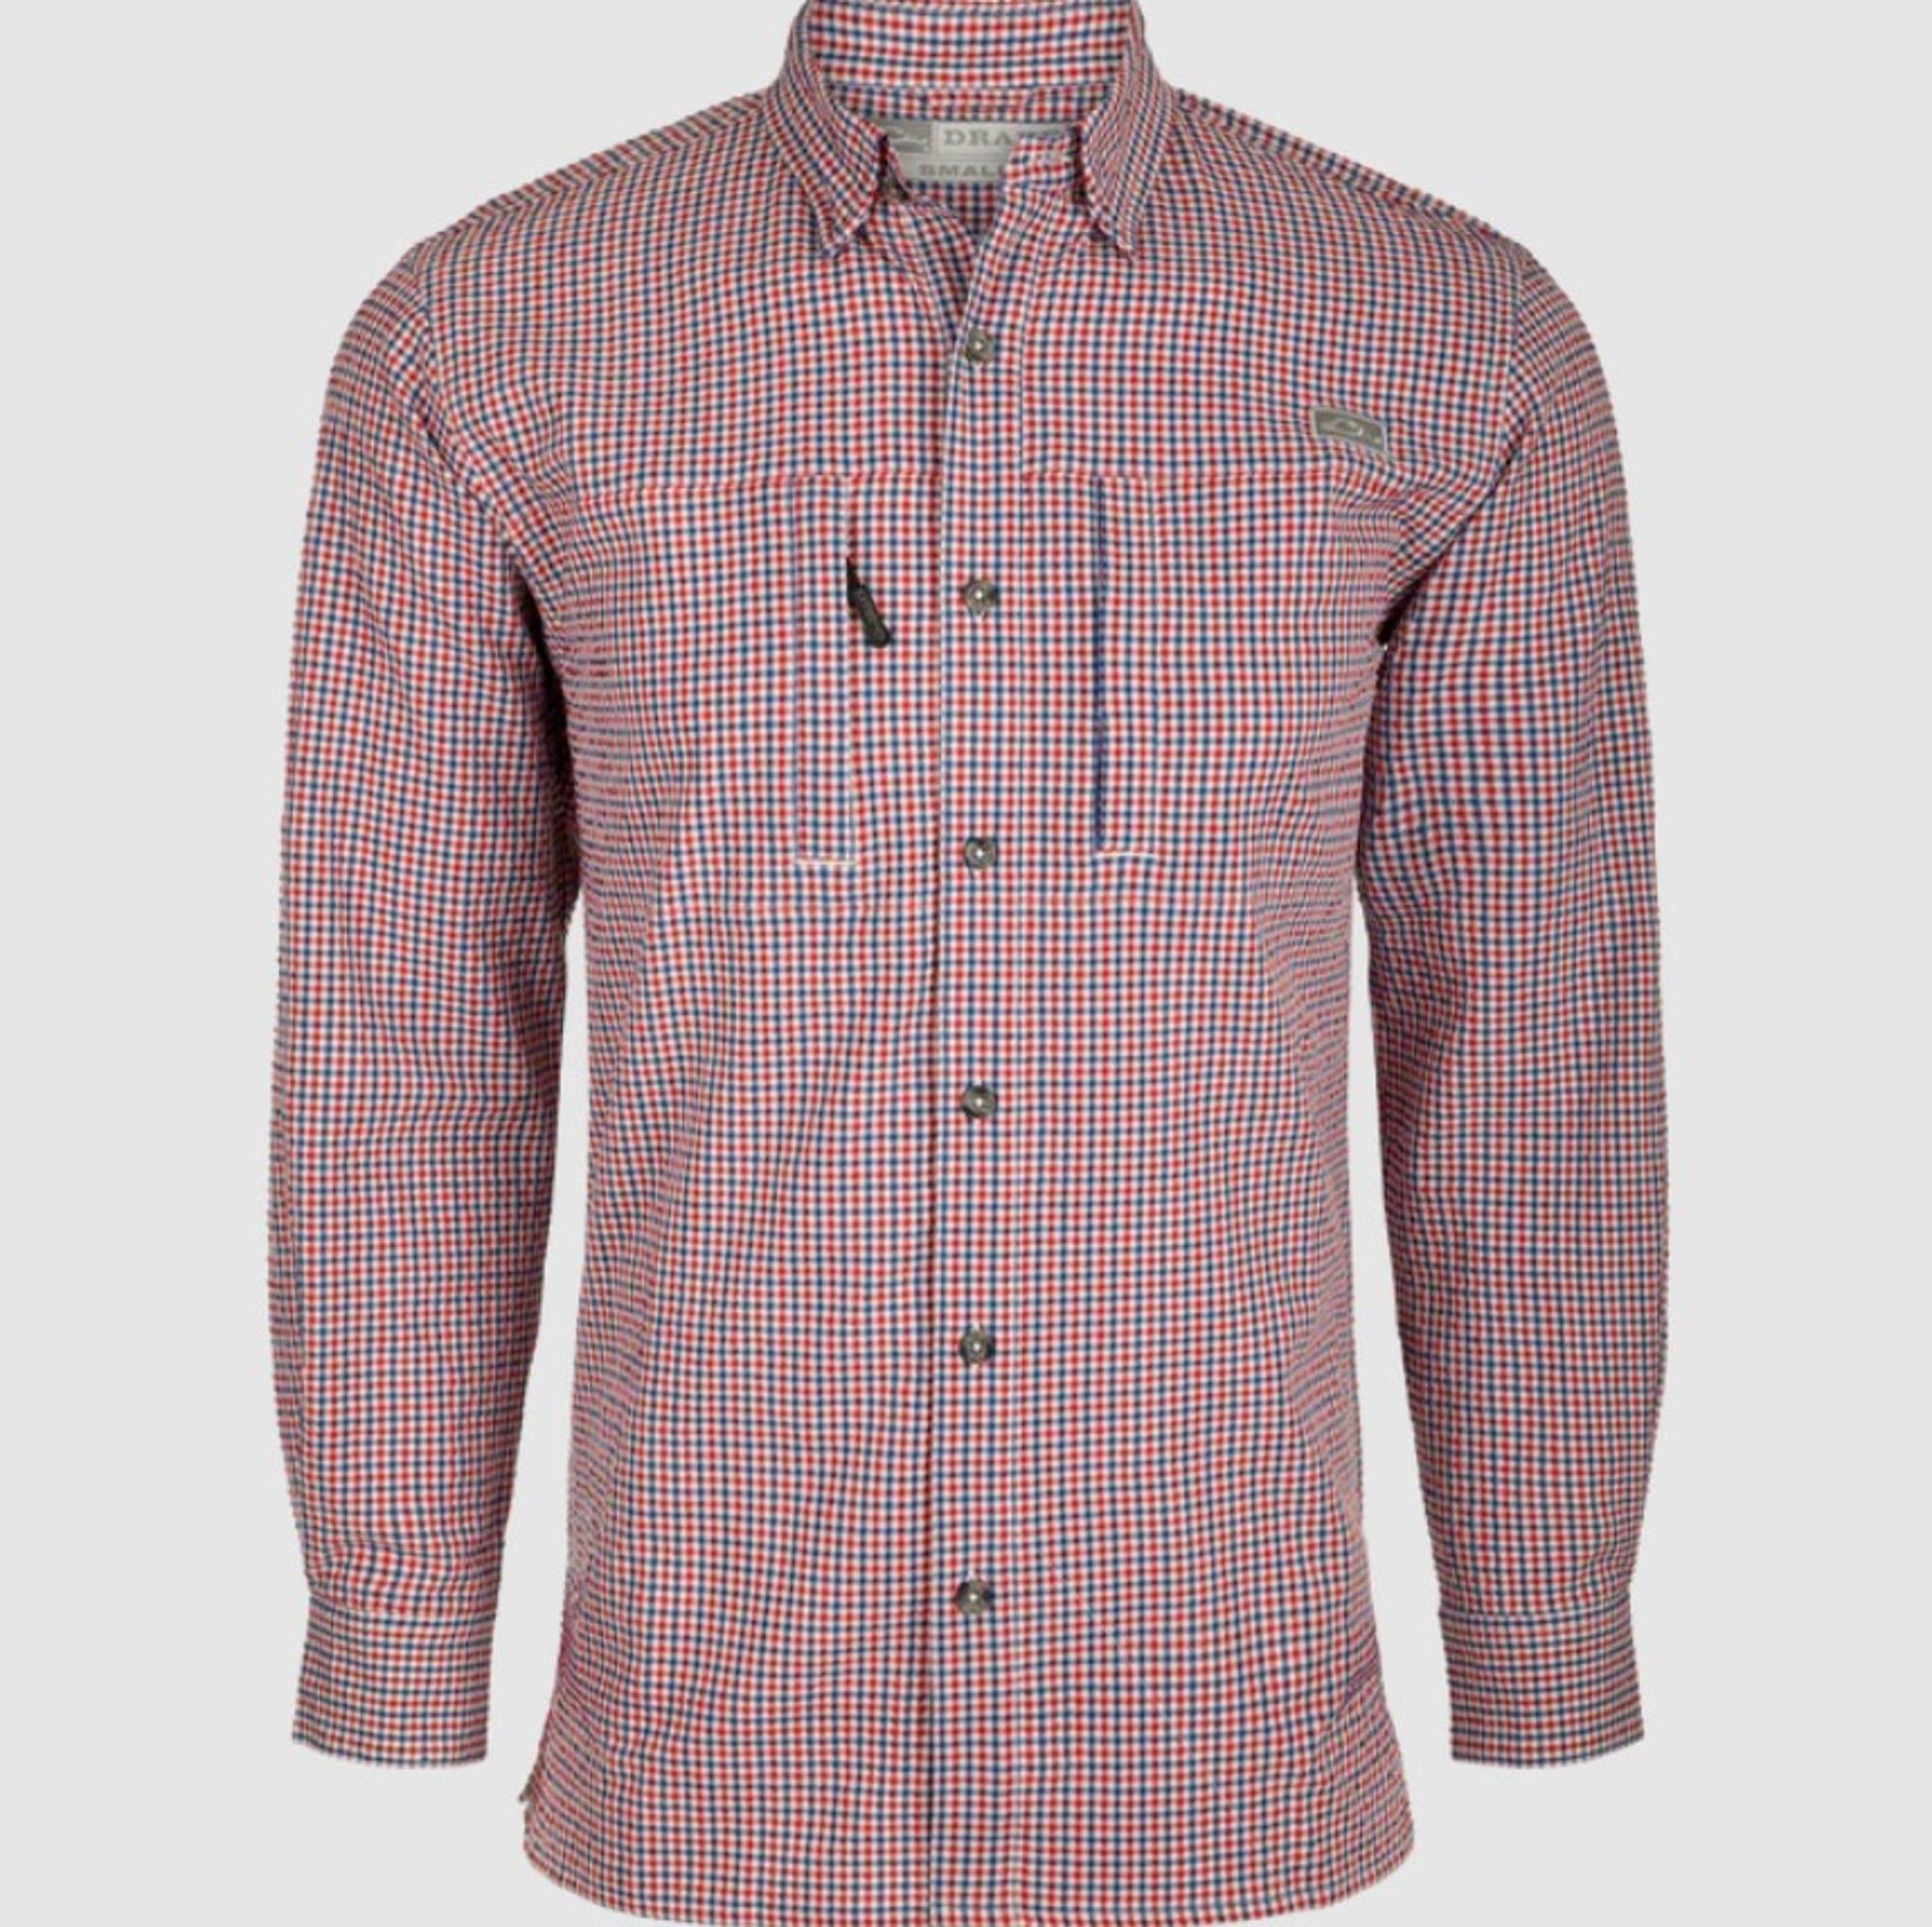 Classic Seersucker Grid Check Long Sleeve Button Up Shirt